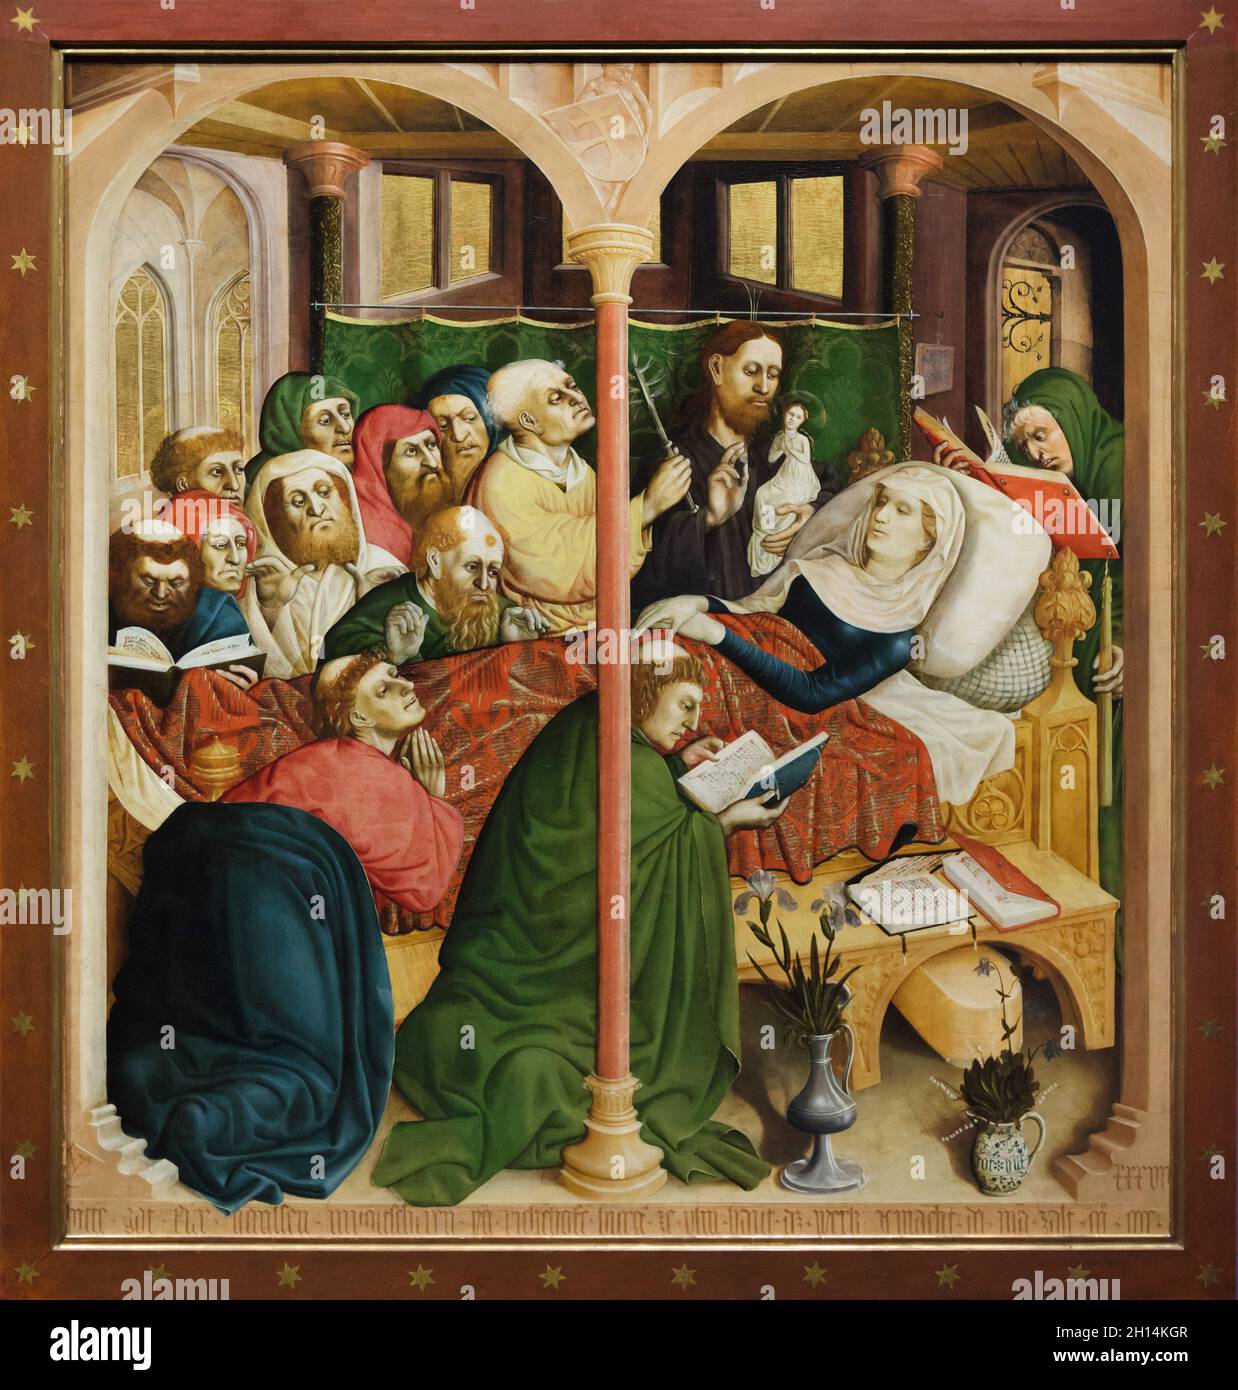 Dormition de la Vierge Marie représentée sur l'aile de l'retable Wurzach par le peintre médiéval allemand Hans Multscher (1437) exposé dans la Berliner Gemäldegalerie (Berlin Picture Gallery) à Berlin, Allemagne. Banque D'Images